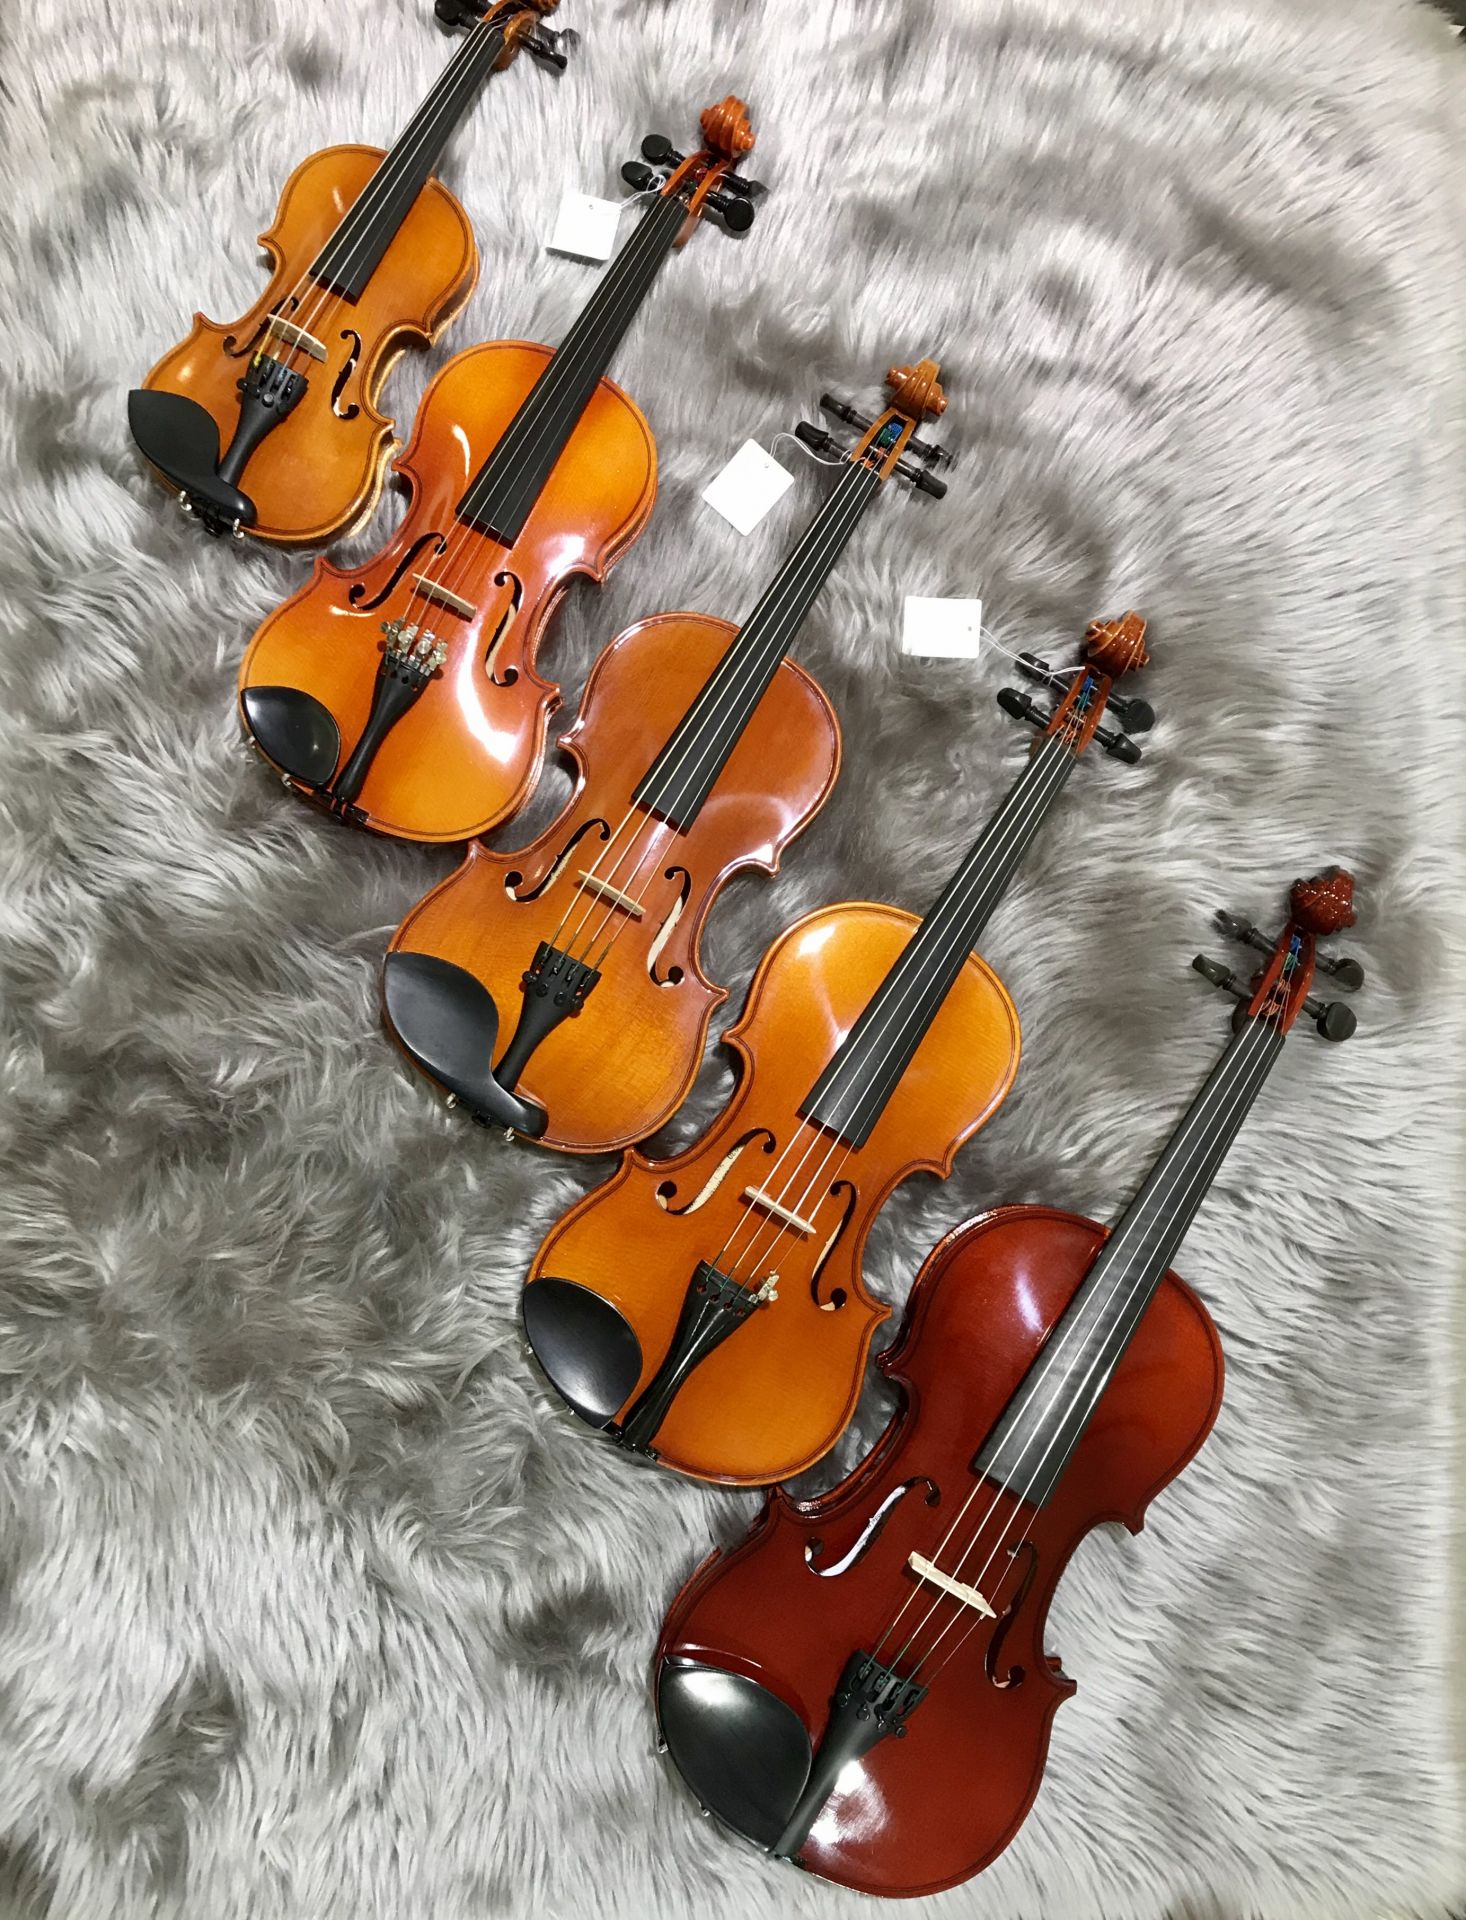 バイオリン 21年最新比較 初めての子供用の分数バイオリン 失敗しない選び方 8つのポイントまとめました おすすめ定番機種展示中 イオンモール甲府昭和店 店舗情報 島村楽器